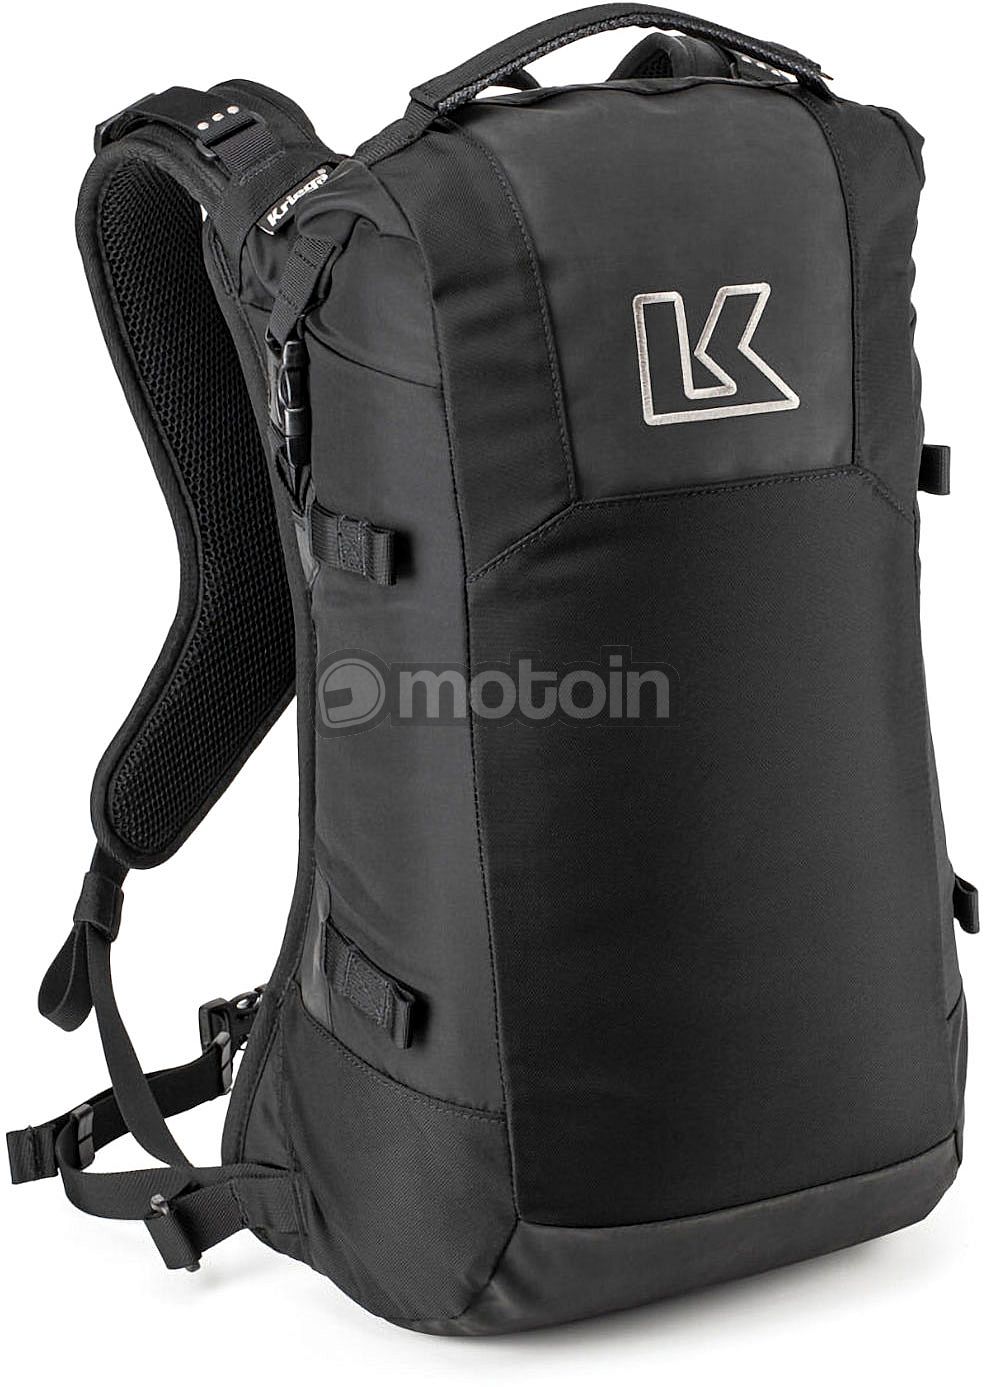 Kriega R16, backpack waterproof